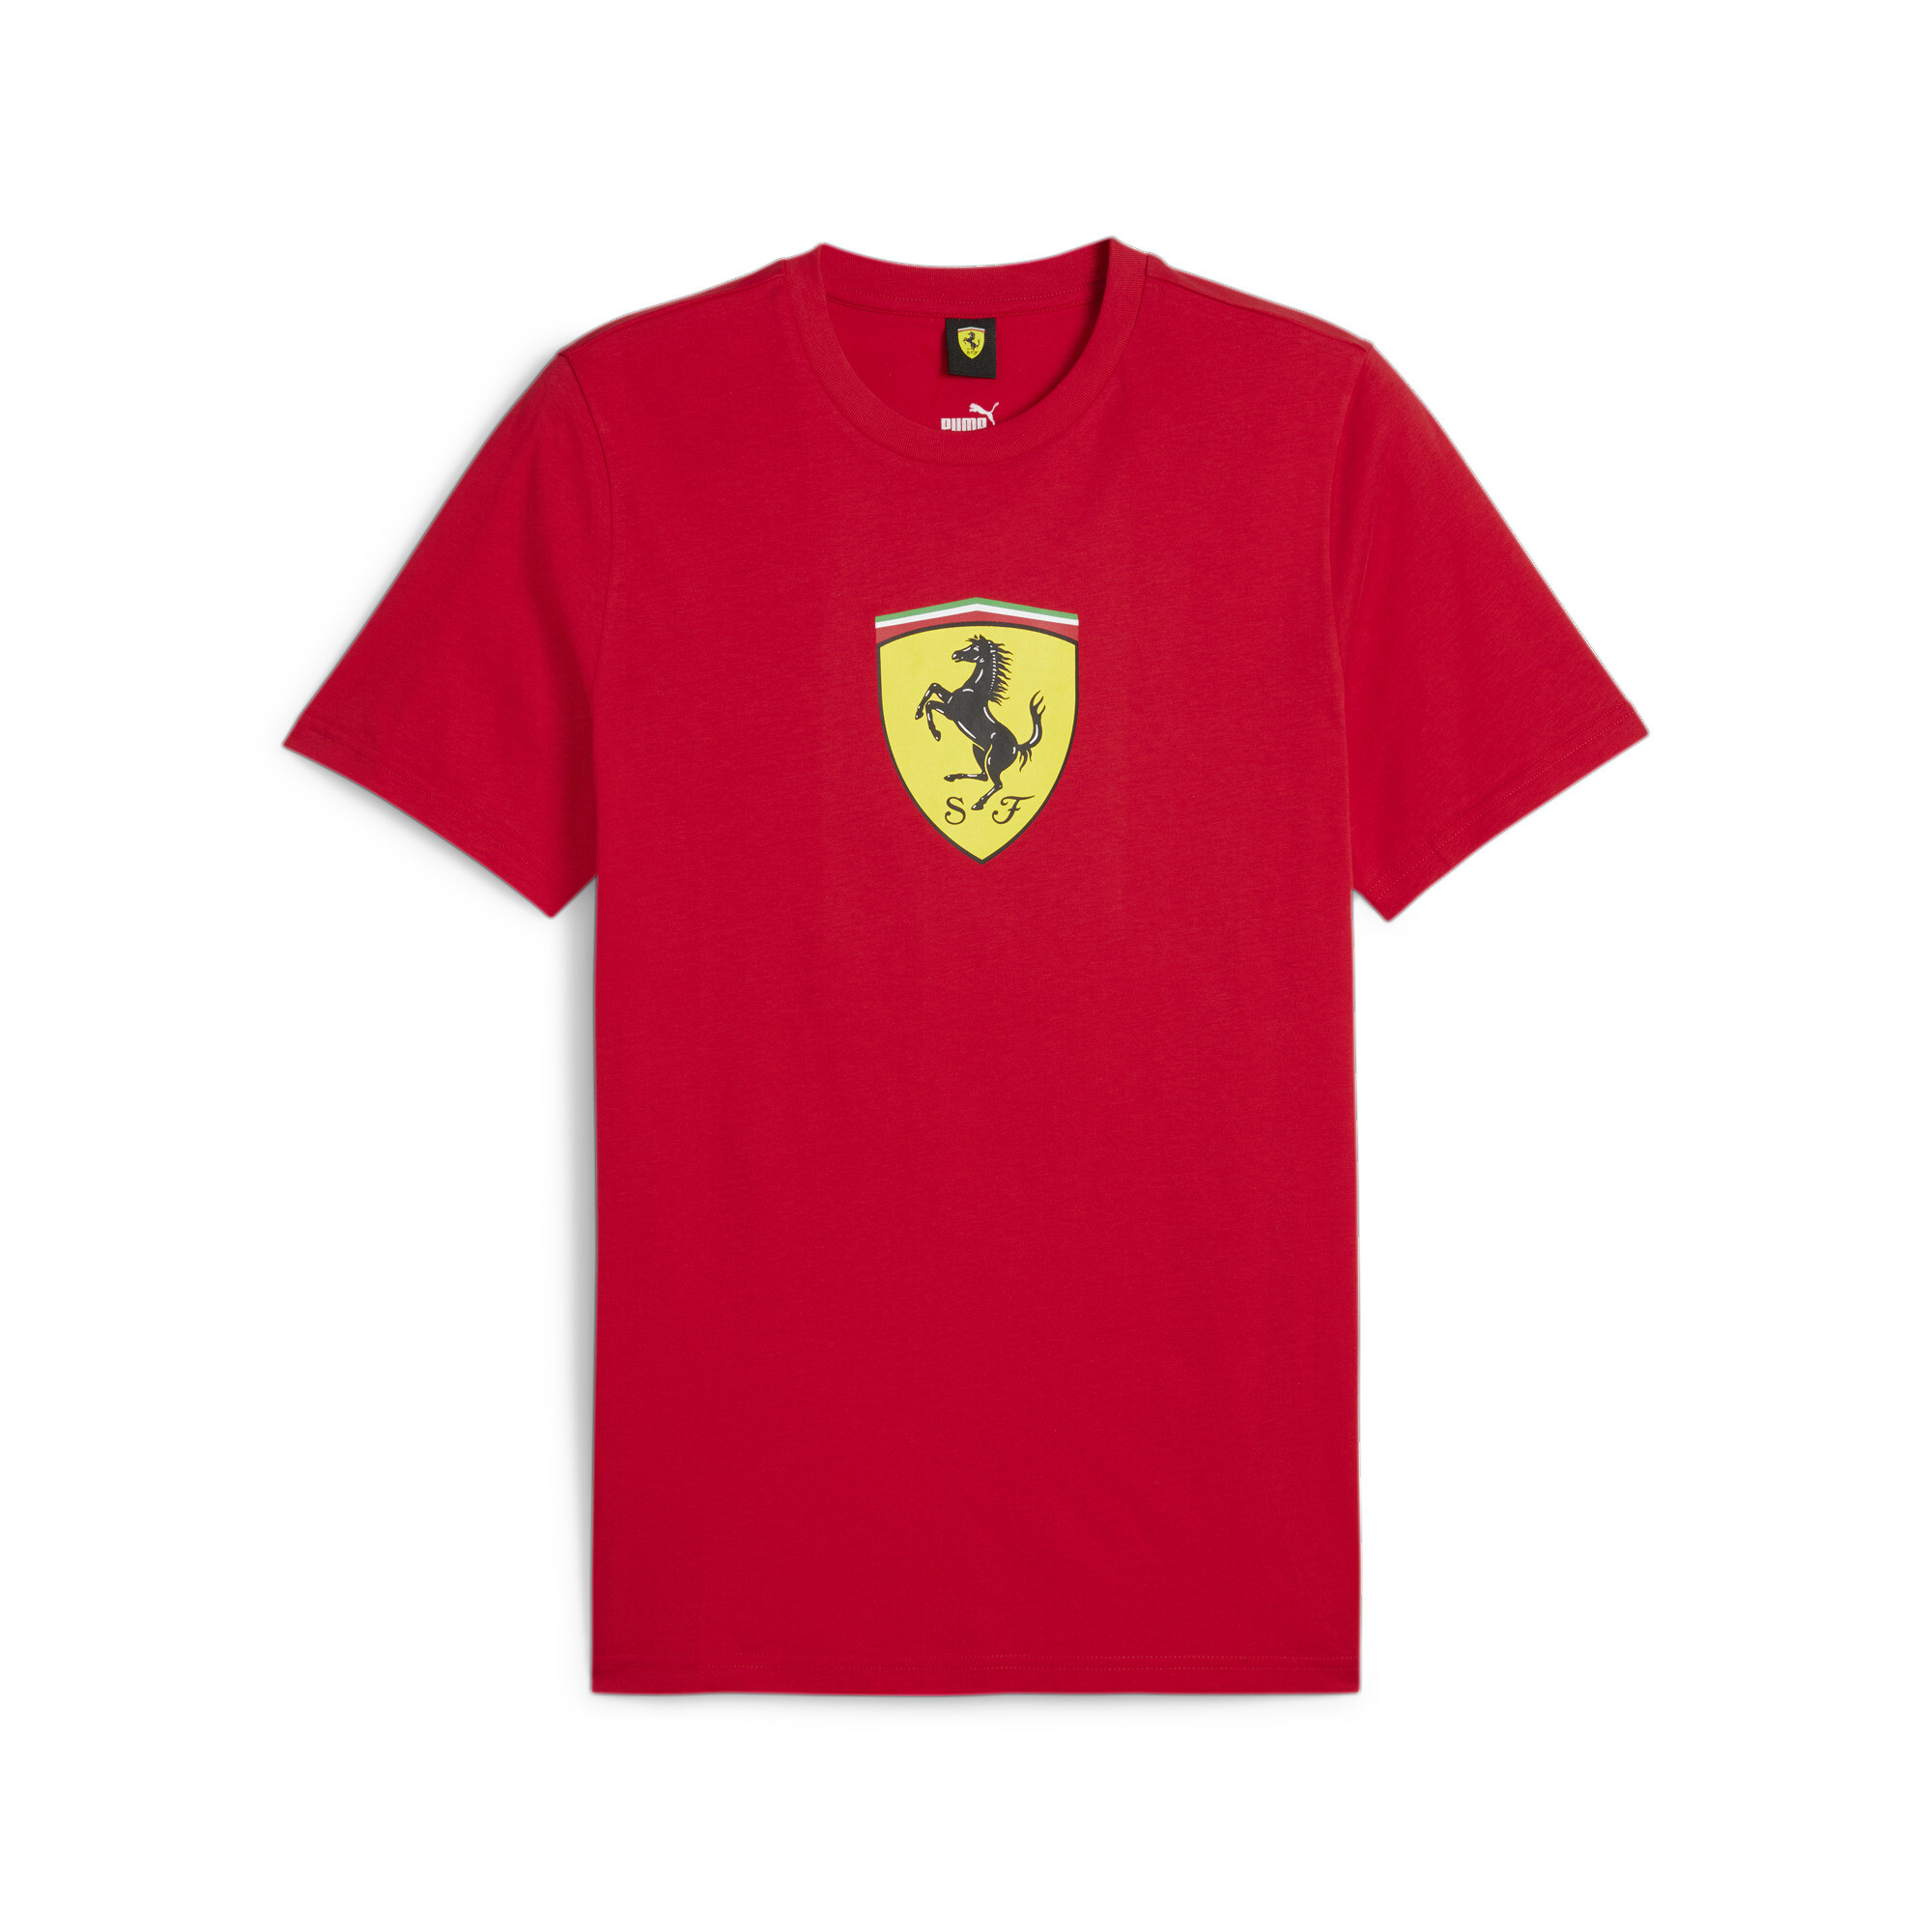 Men's PUMA Scuderia Ferrari Race T-Shirt In Red, Size Large